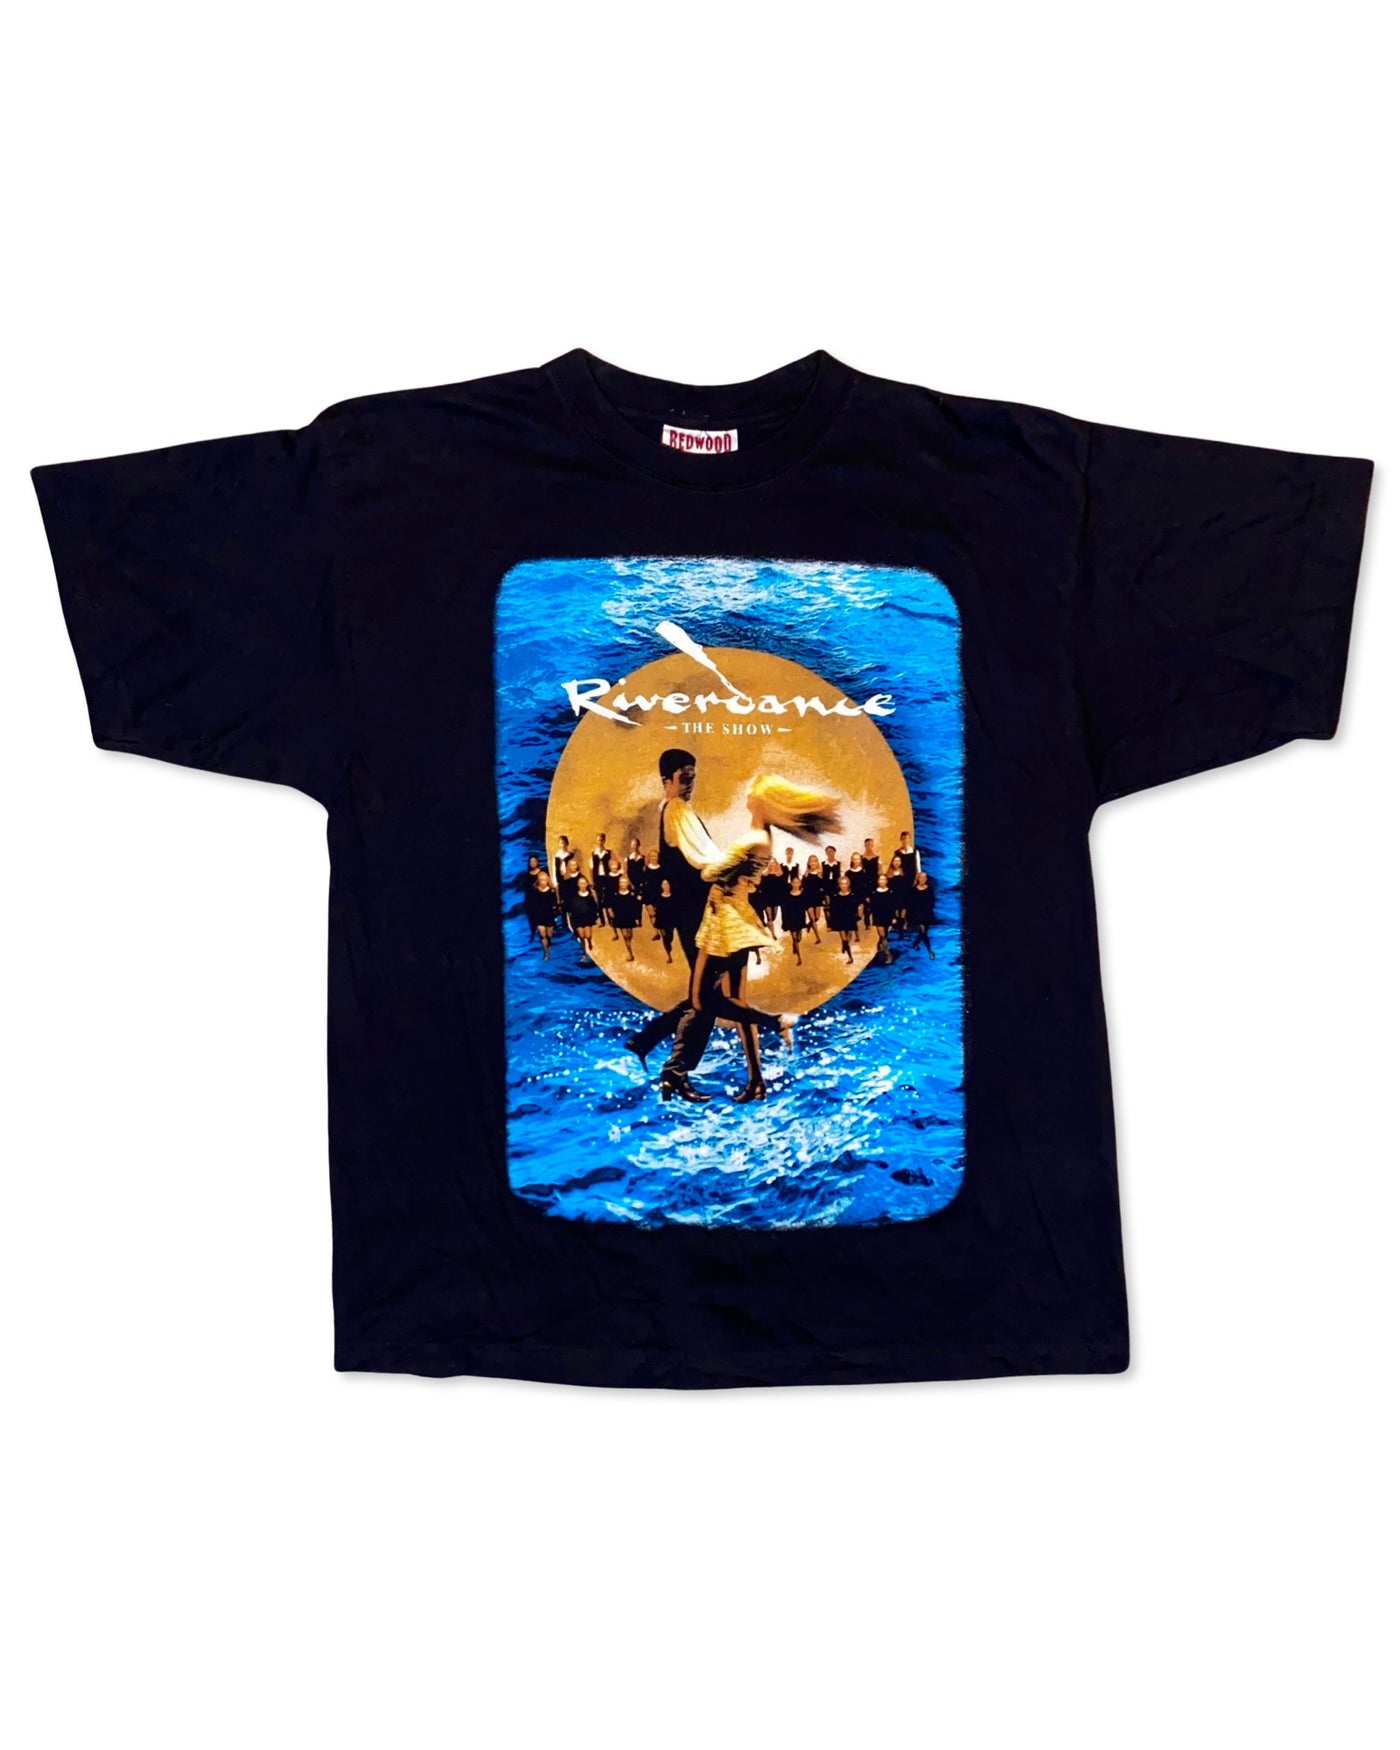 Vintage 1996 Riverdance the Show T-Shirt